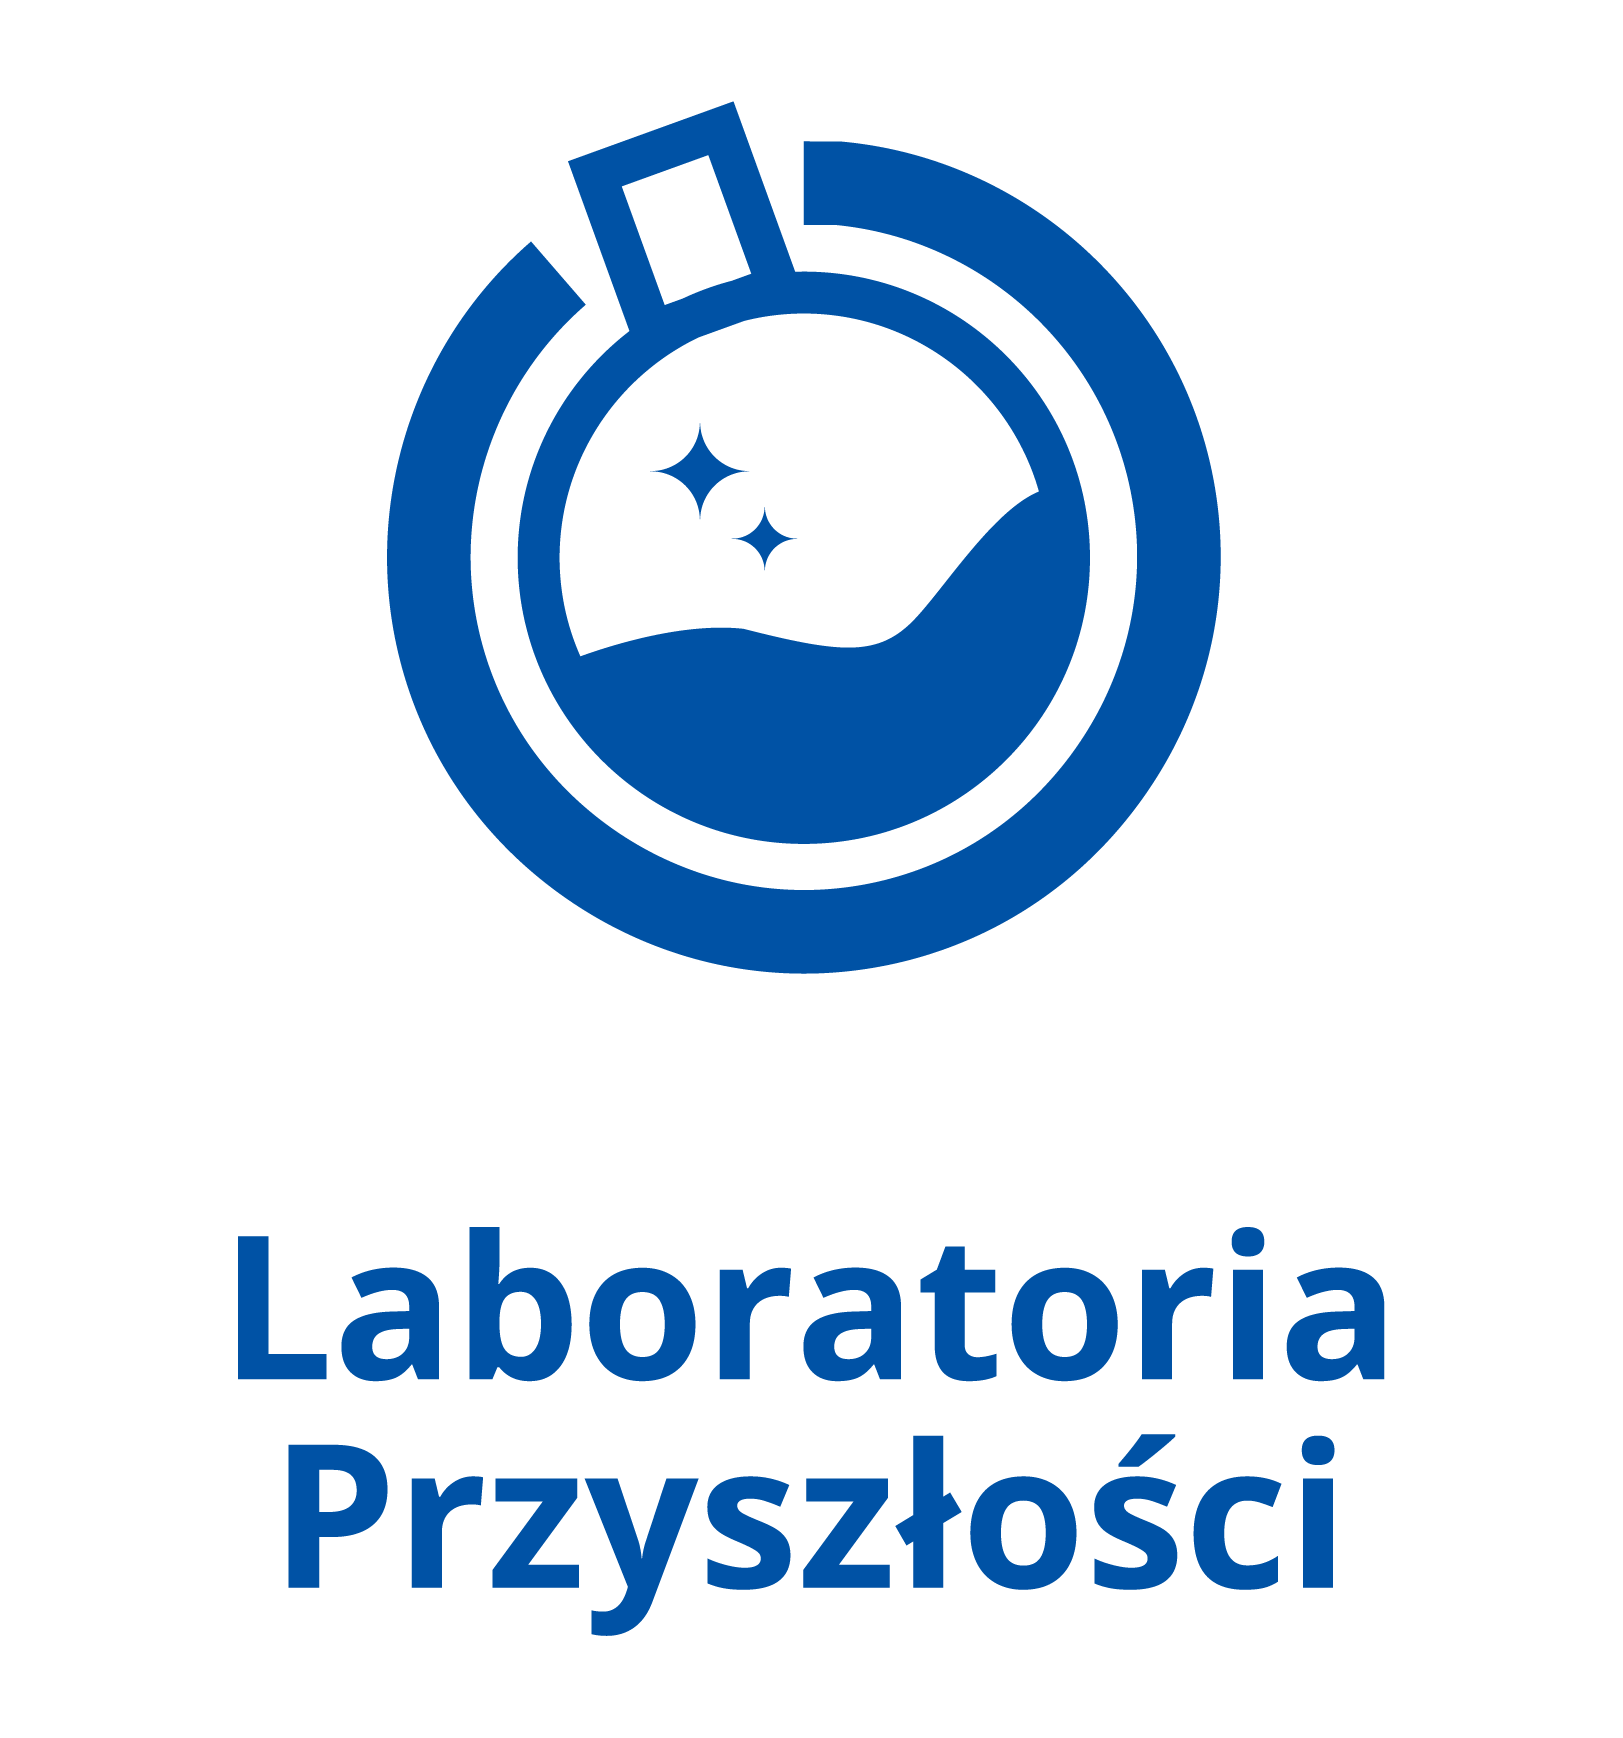 logo-Laboratoria_Przyszłości_pion_kolor.png